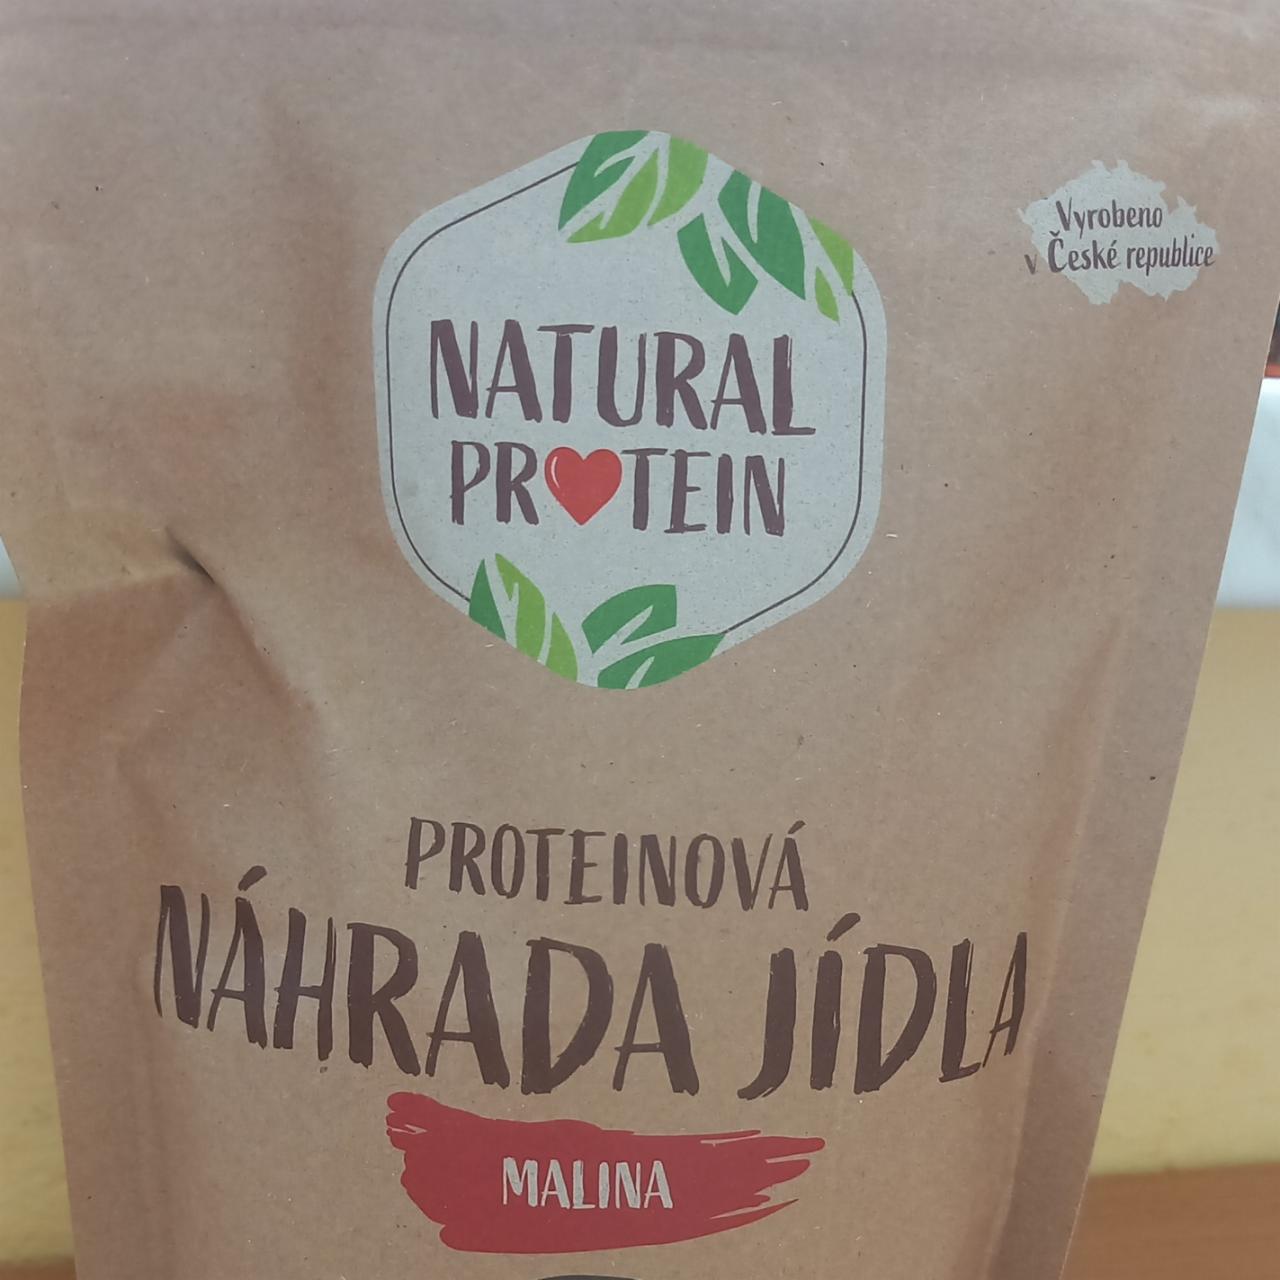 Fotografie - Proteinová náhrada jídla Malina Natural protein